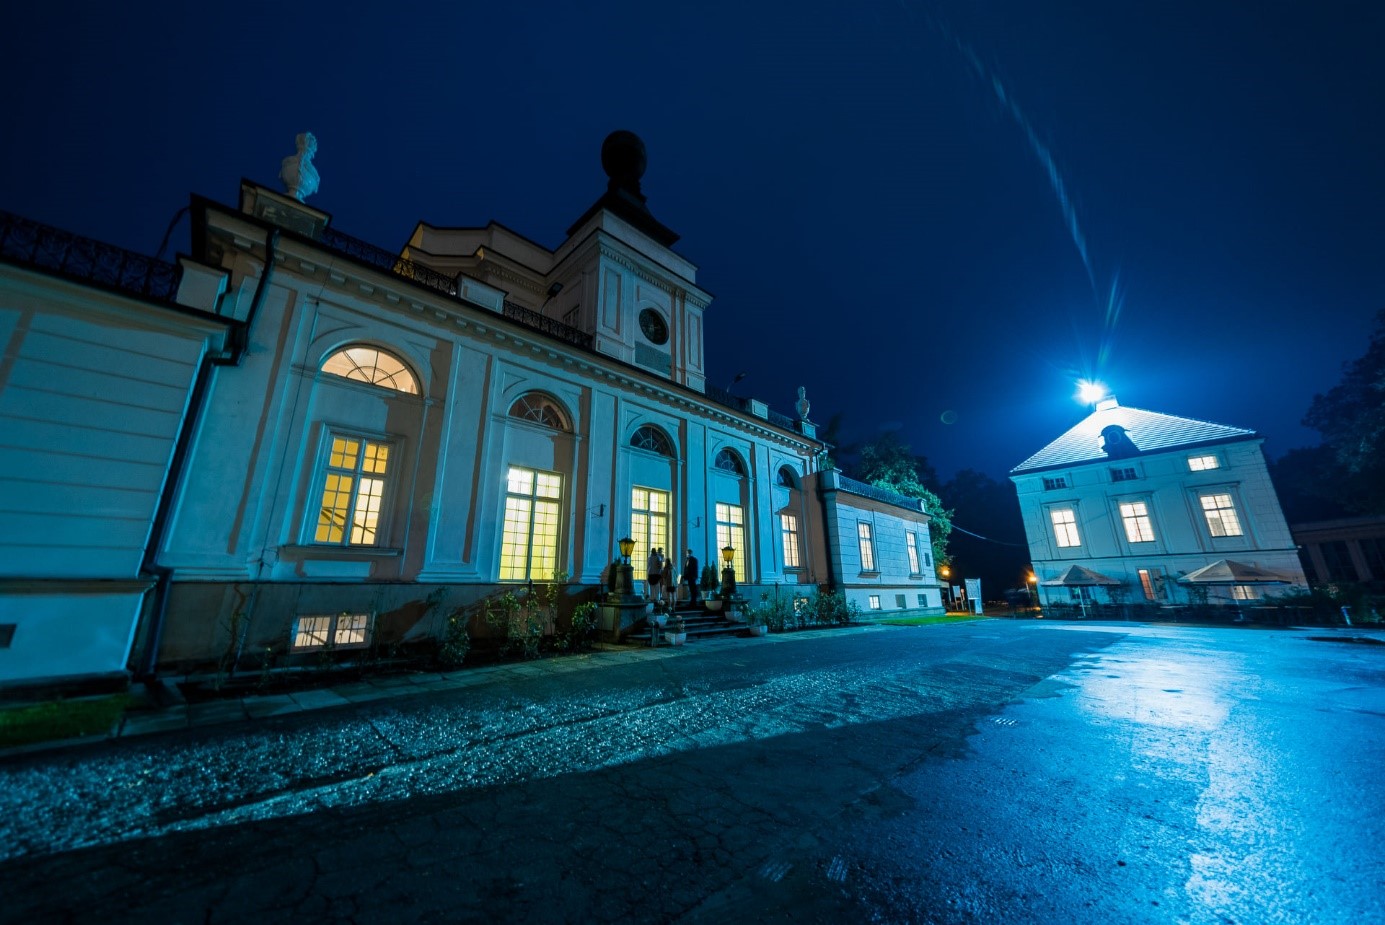 Nocny widok głównej fasady pałacu